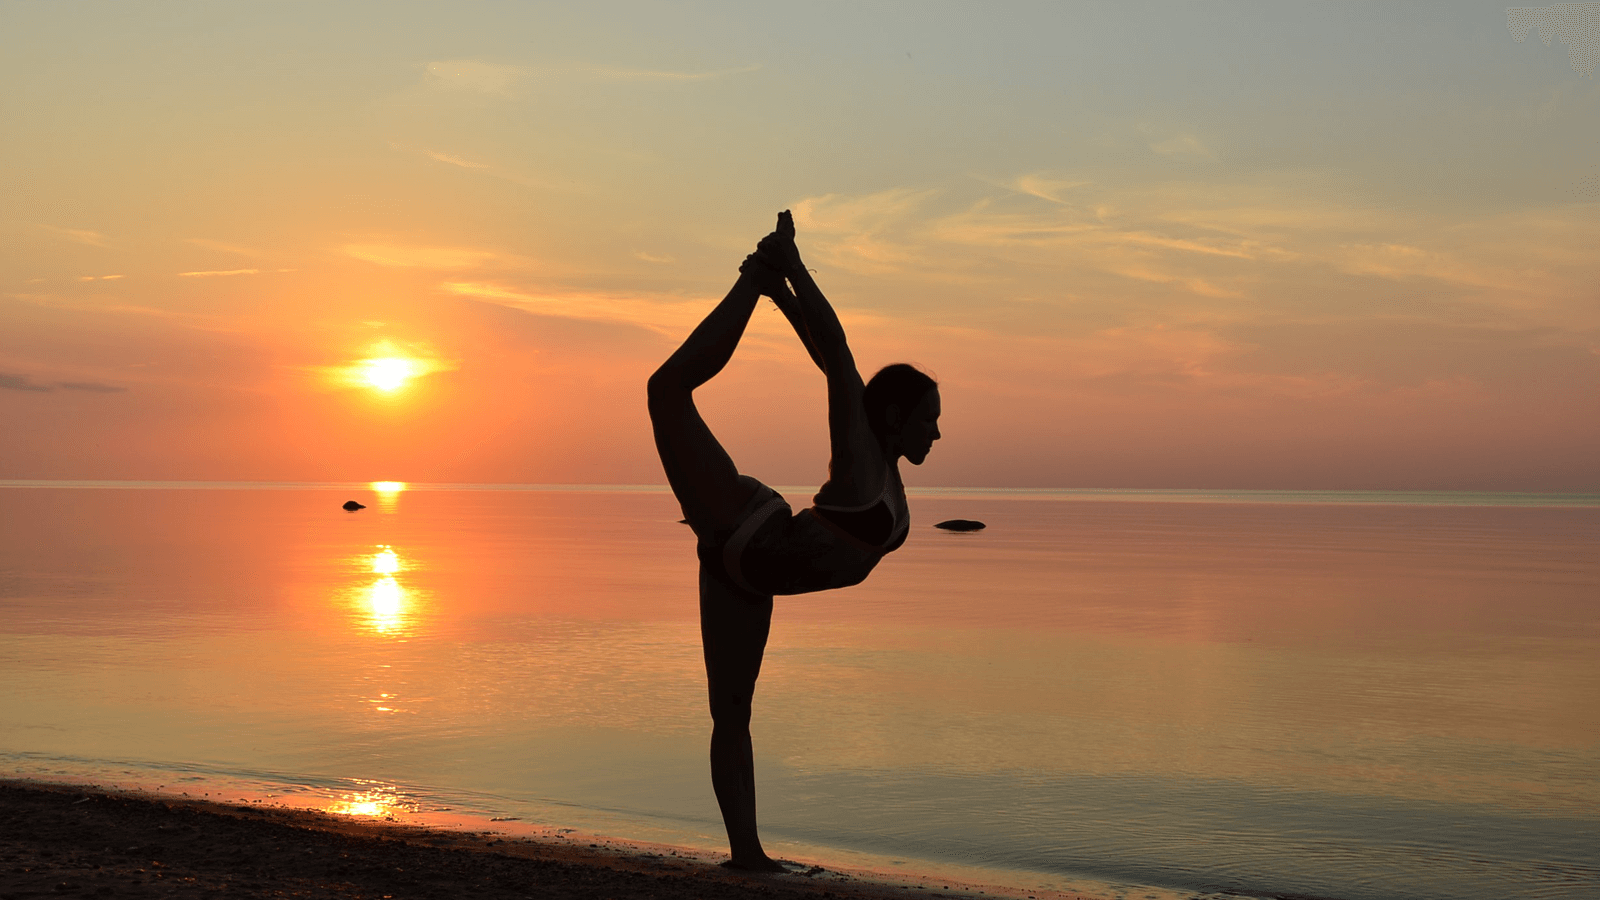 Tập yoga bao lâu thì có hiệu quả là câu hỏi “bật” ra đầu tiên của những ai nóng lòng muốn tìm đến yoga để giảm cân, tăng sự dẻo dai, chữa bệnh... Thật khó để xác định hiệu quả trong thời gian ngắn nhưng yoga chắc chắn sẽ không làm bạn thất vọng khi theo đuổi đến cùng.